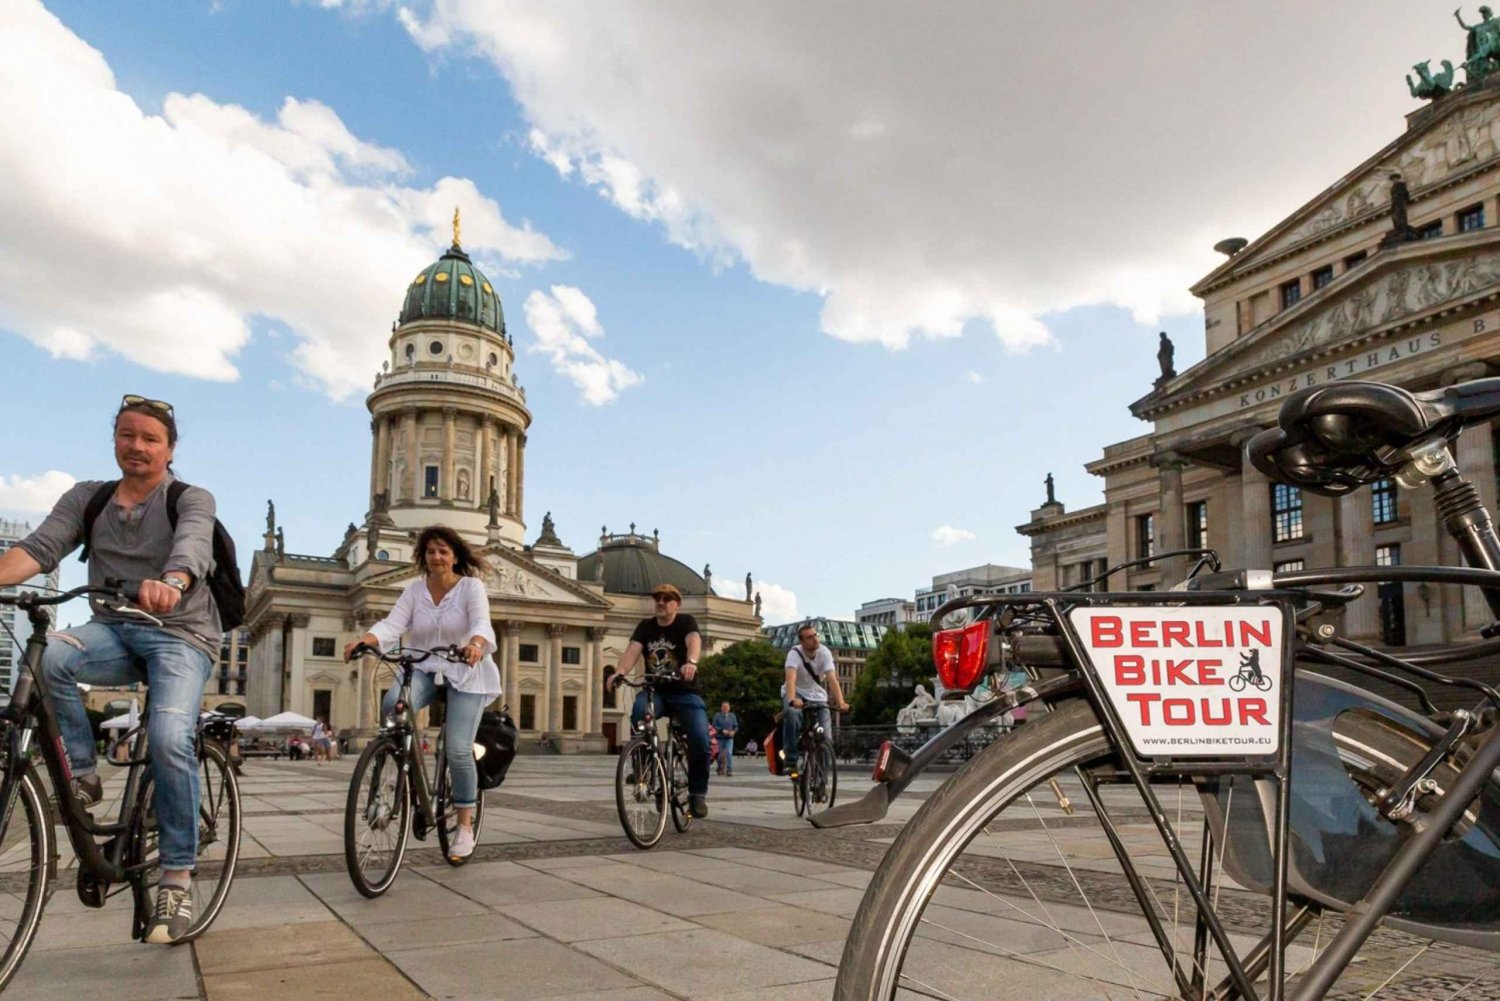 Berlín: tour en grupo reducido en bici por el centro